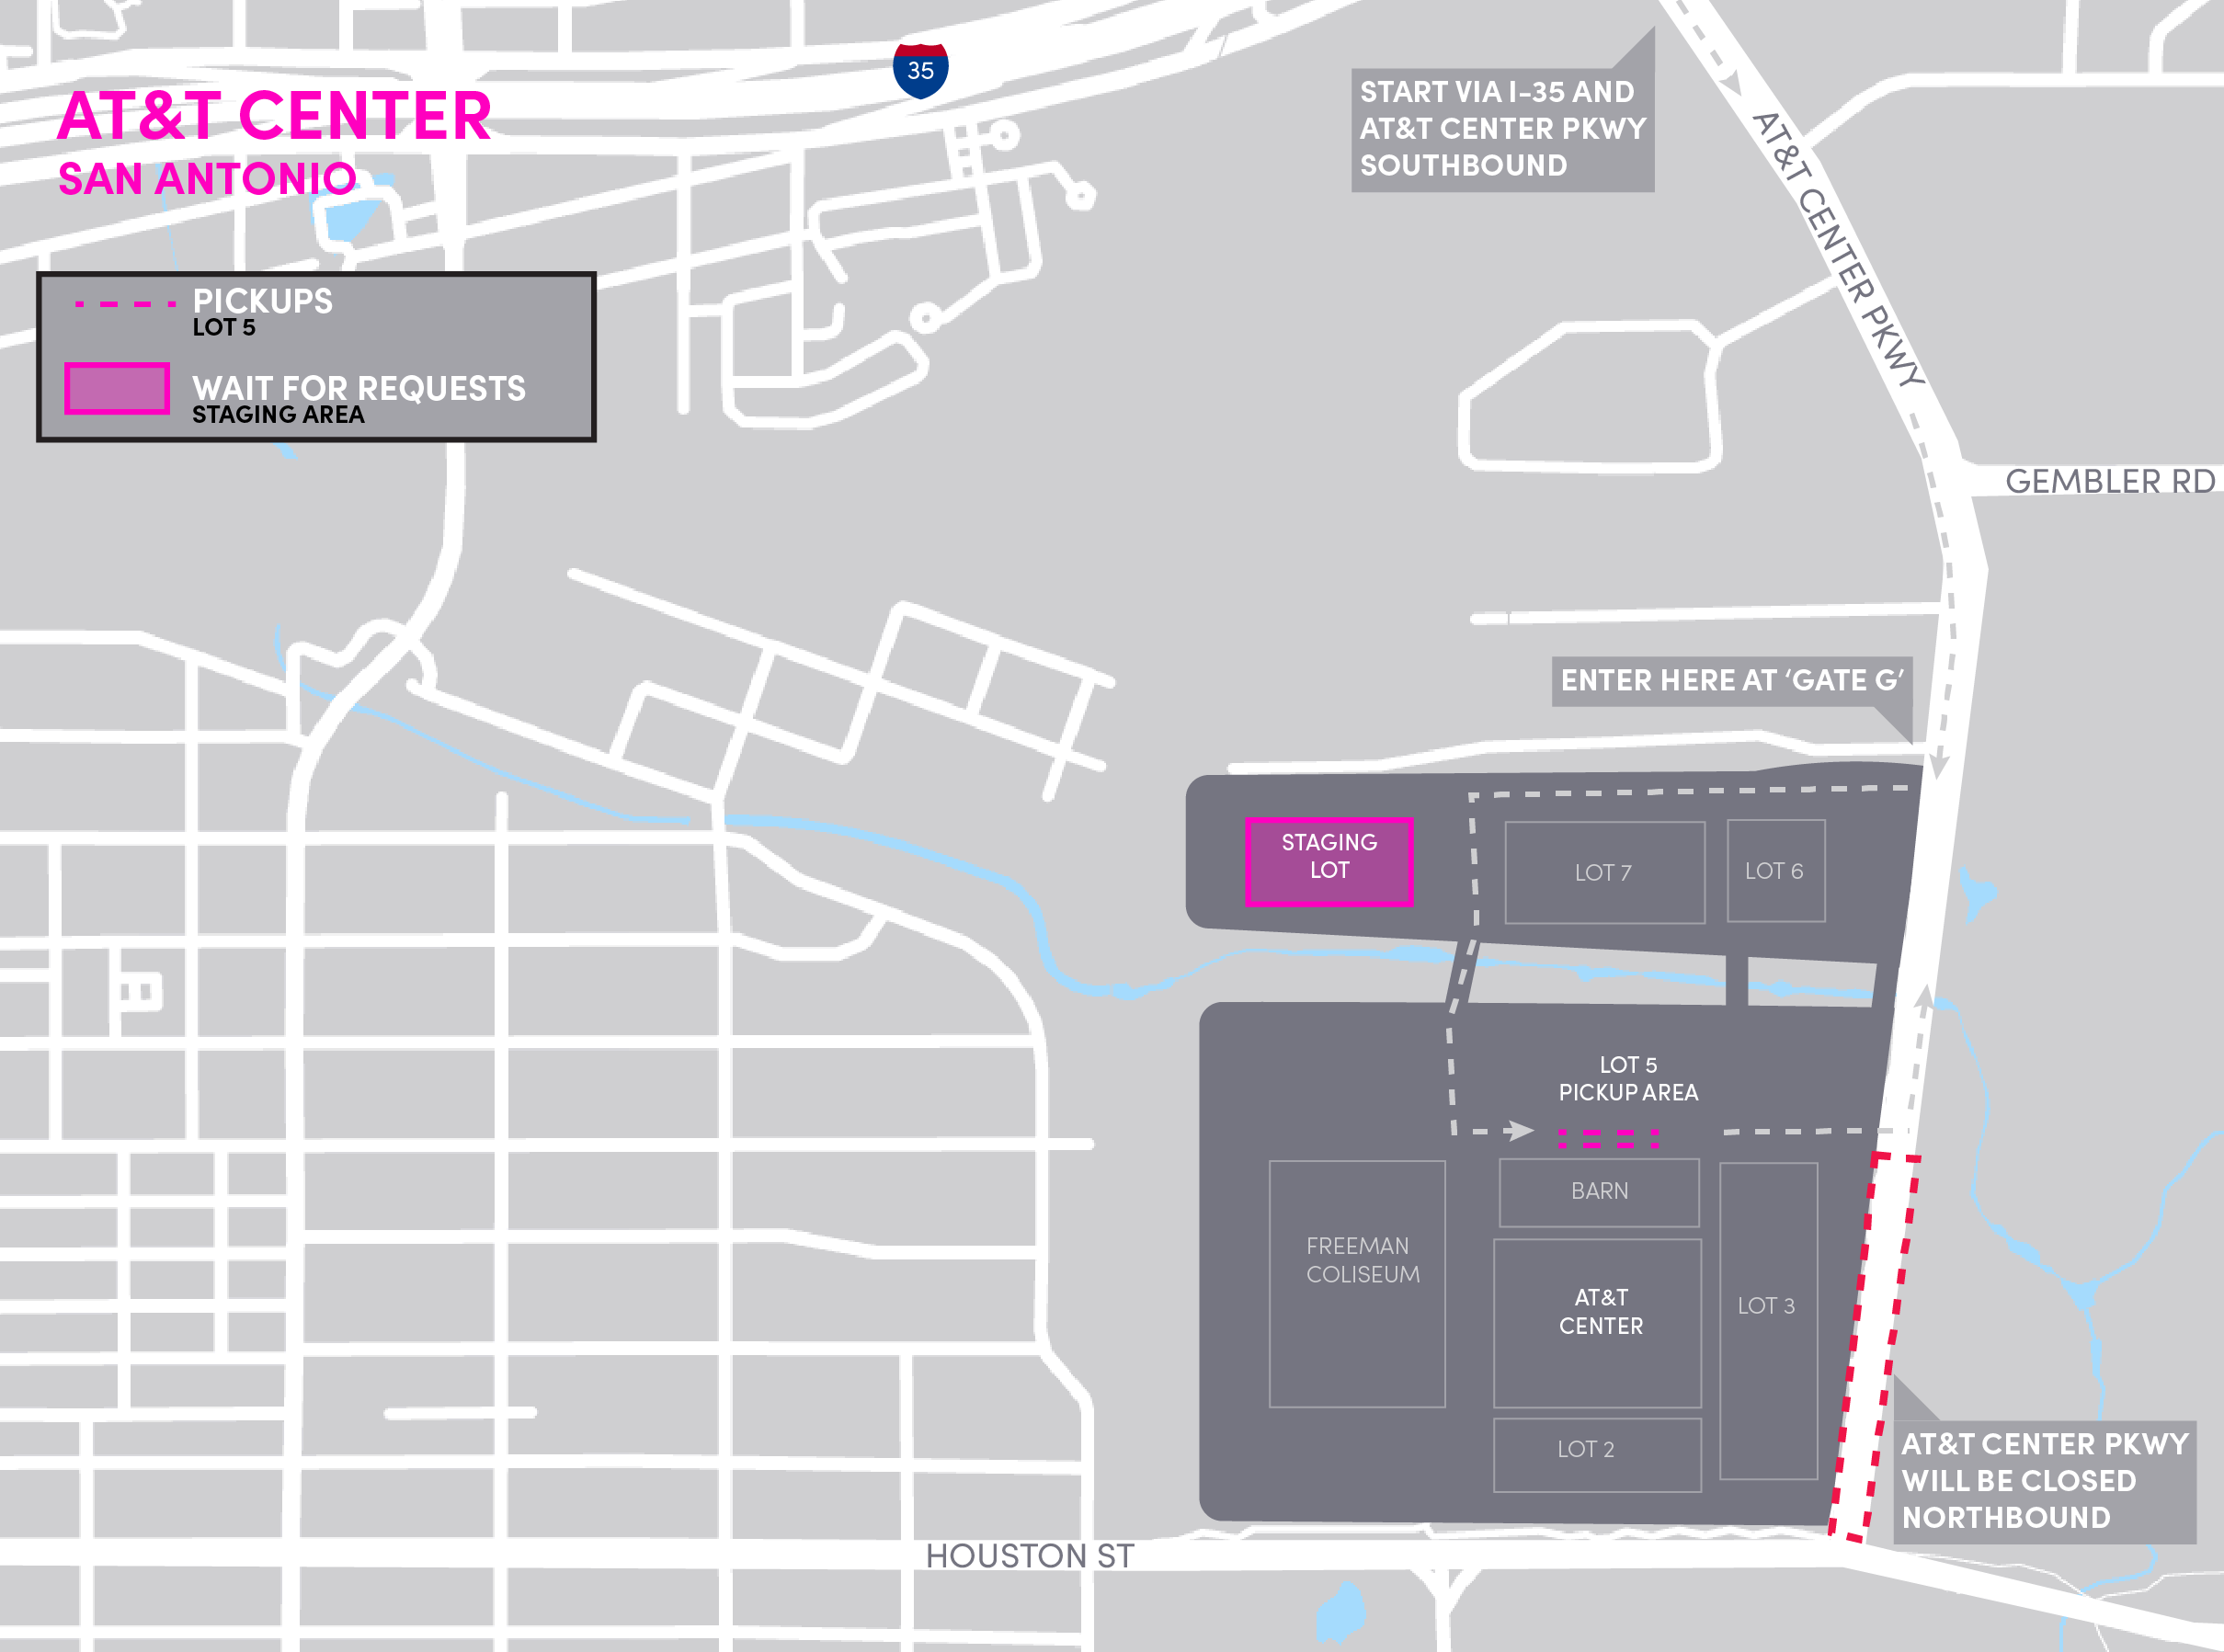 Mapa del AT&T Center en San Antonio, que detalla las ubicaciones de partida y las áreas de espera.